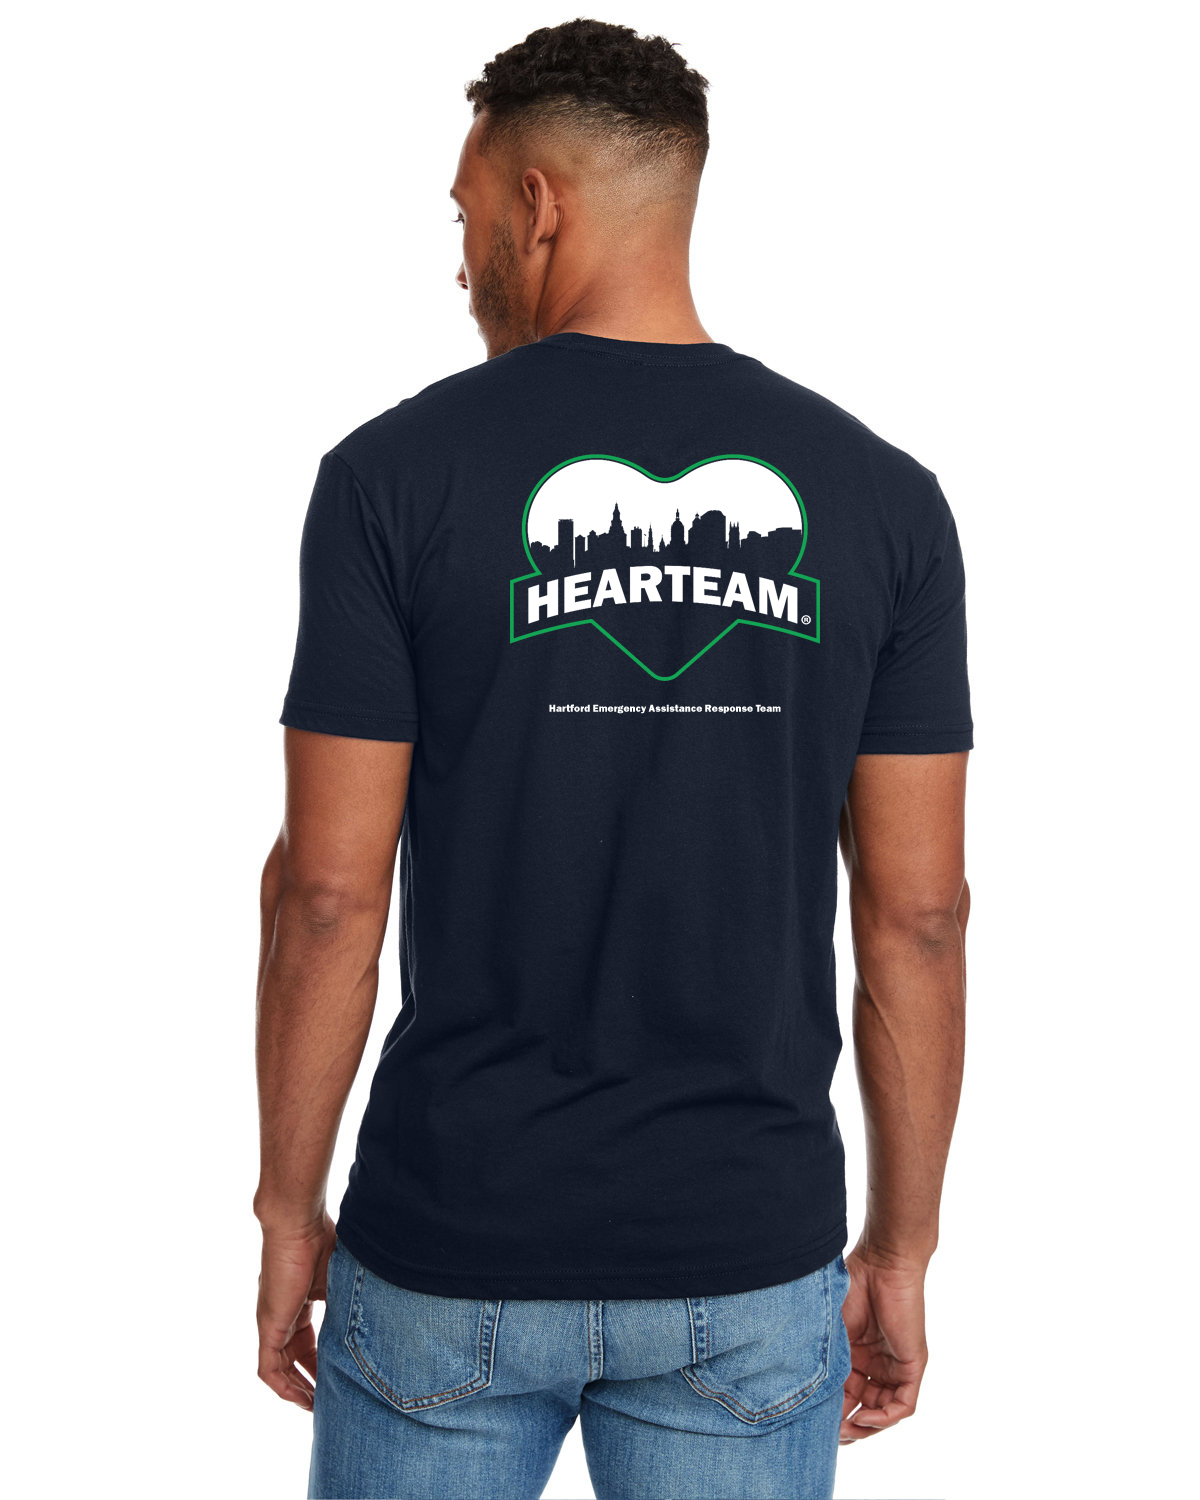 HEARTEAM t-shirt back